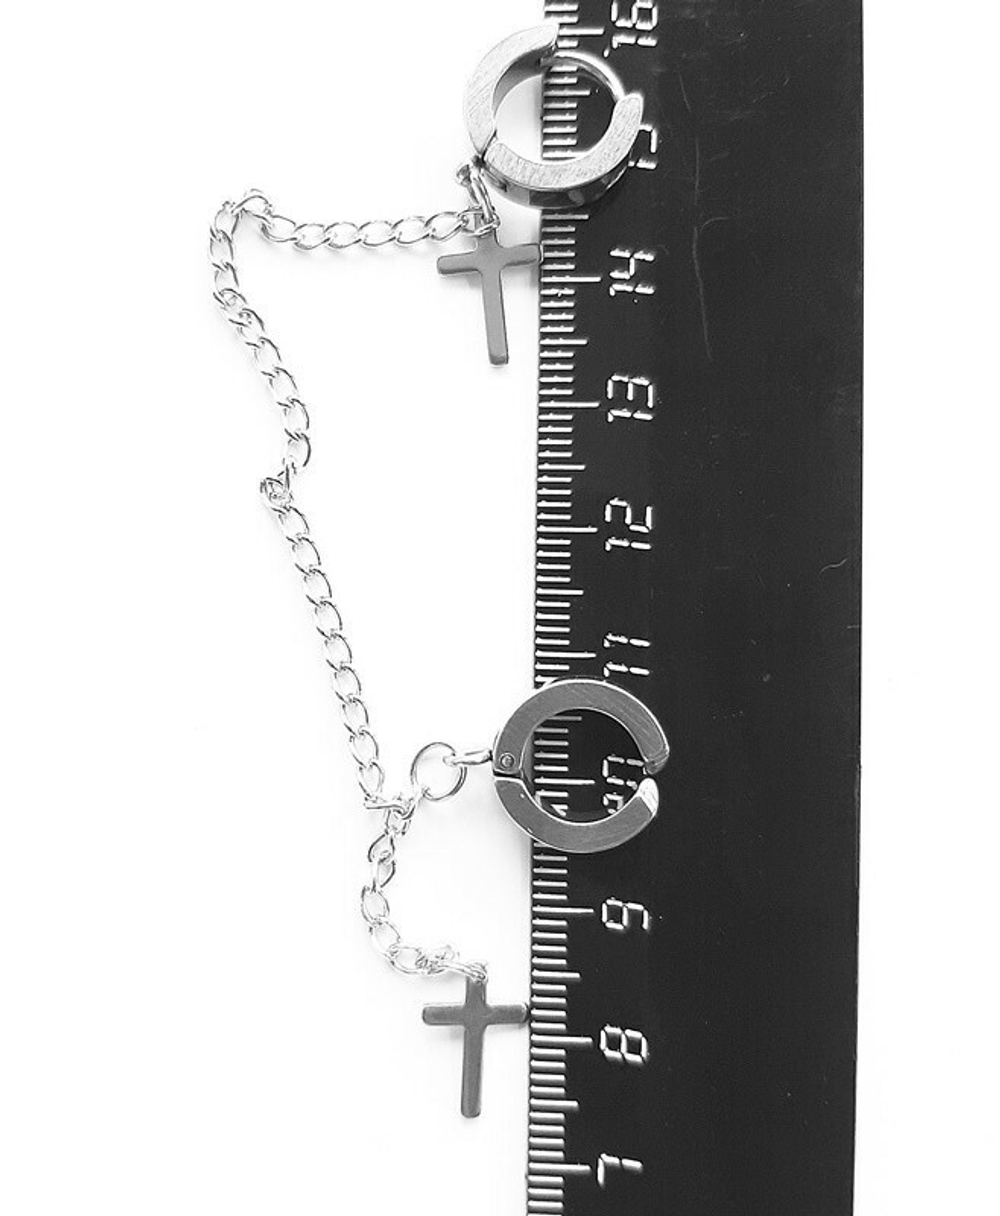 Серьга-кольцо + серьга обманка кольцо с цепочкой и подвесками Крестик. 1 шт (две сережки соединенный цепочкой)